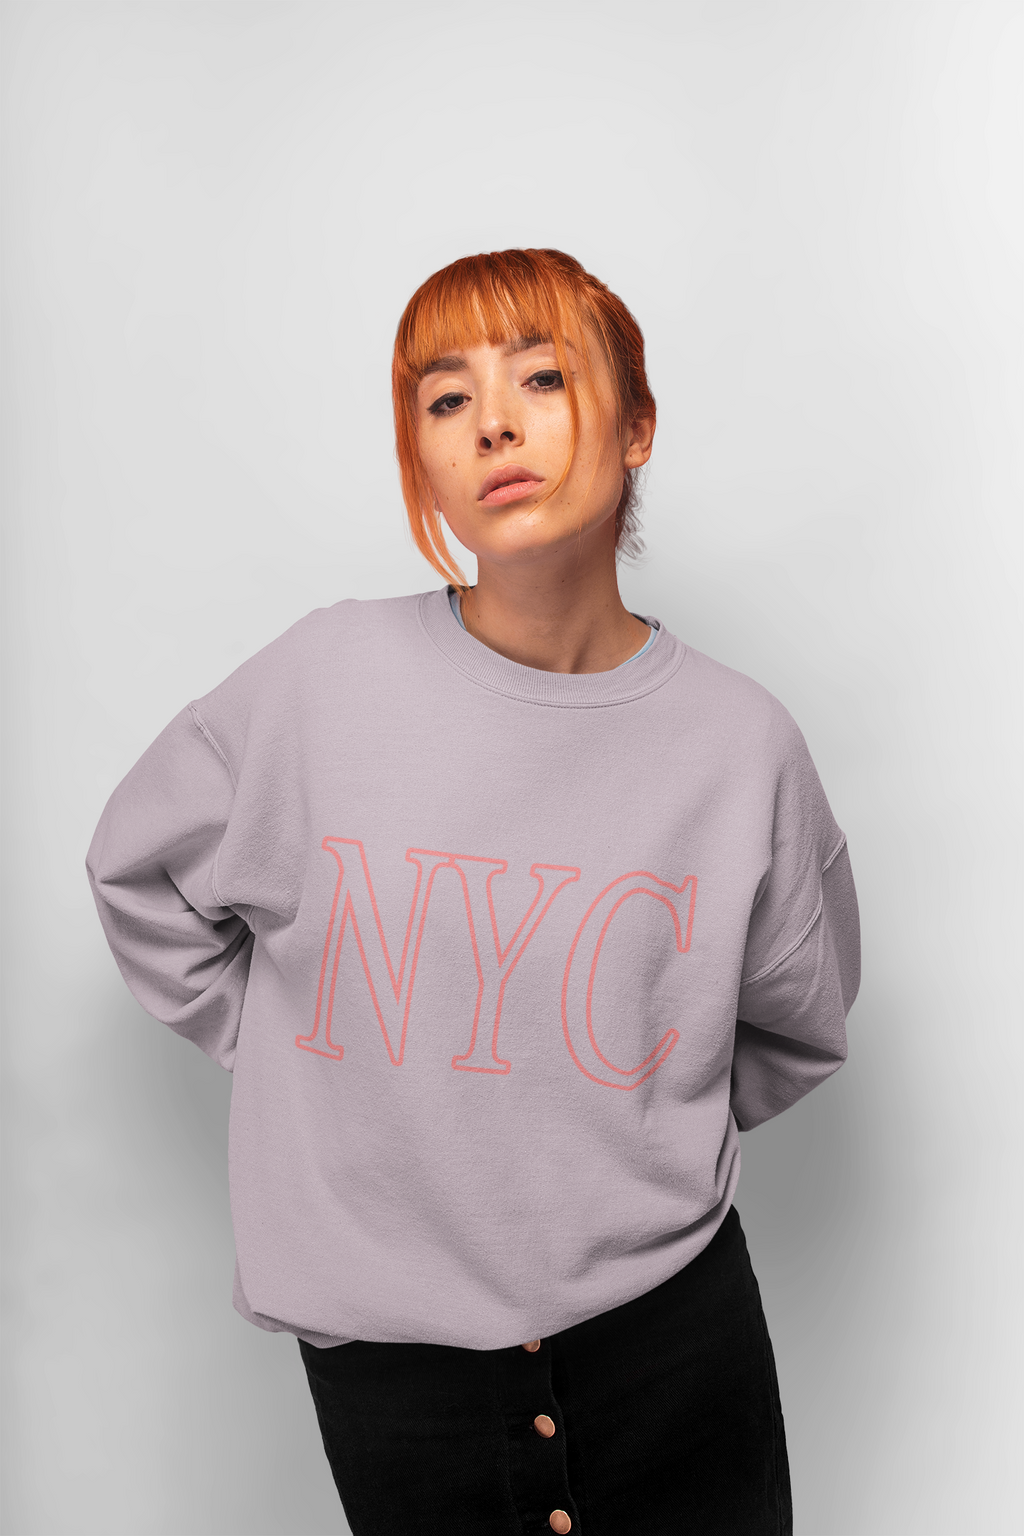 Pink NYC Crewneck Sweatshirt